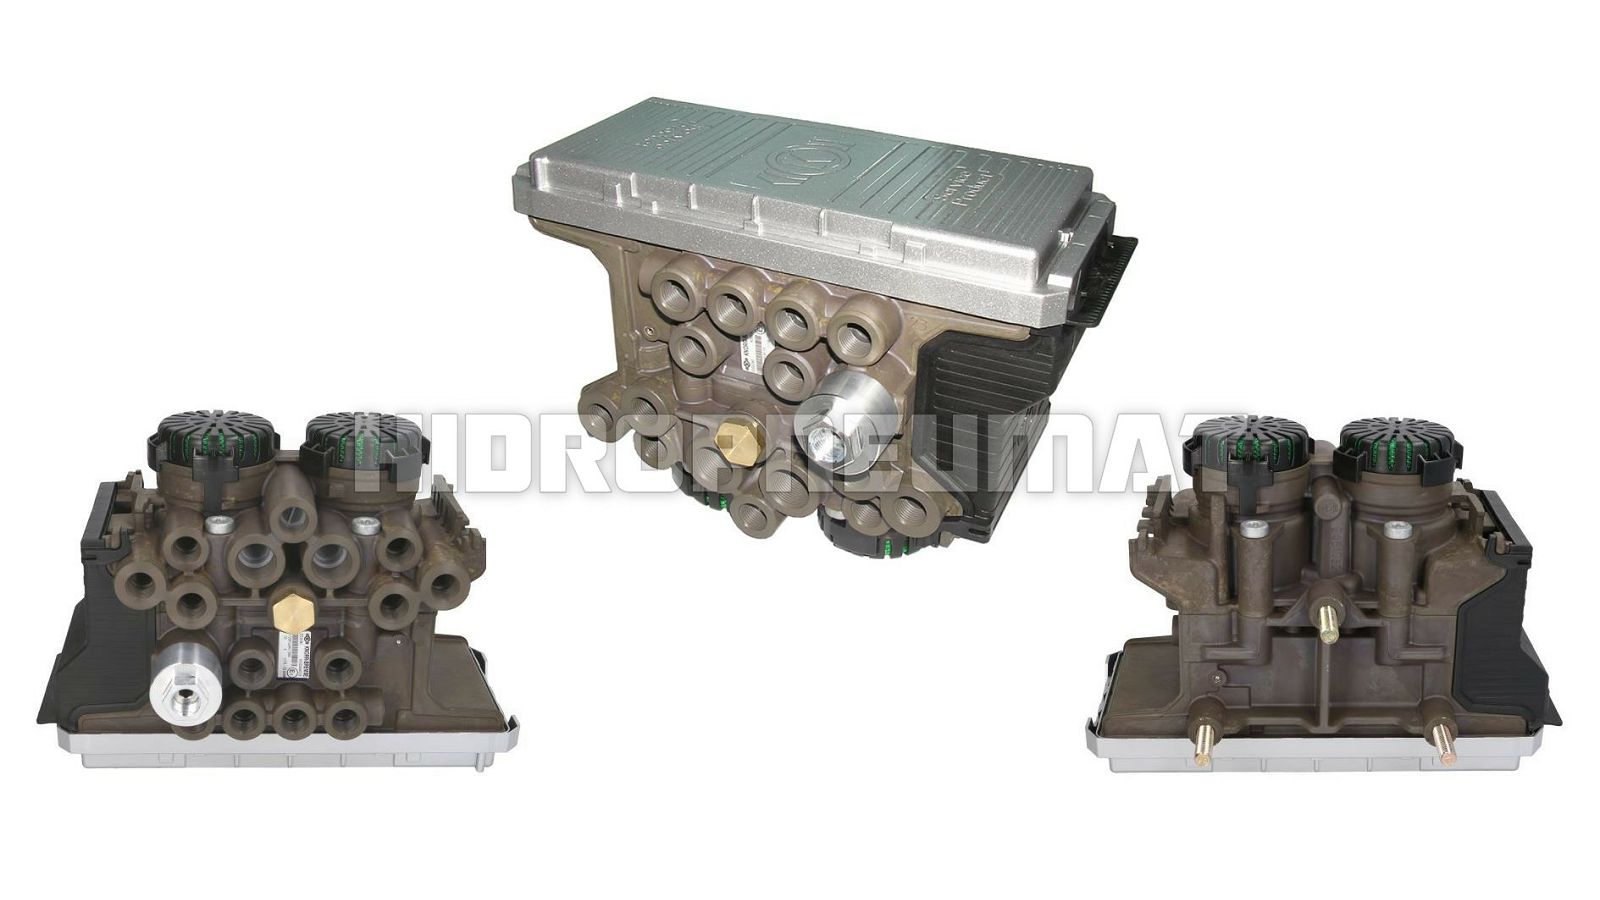 ebs-modulator-g22-knorr-bremse-standard-es2090-125649_1.jpg